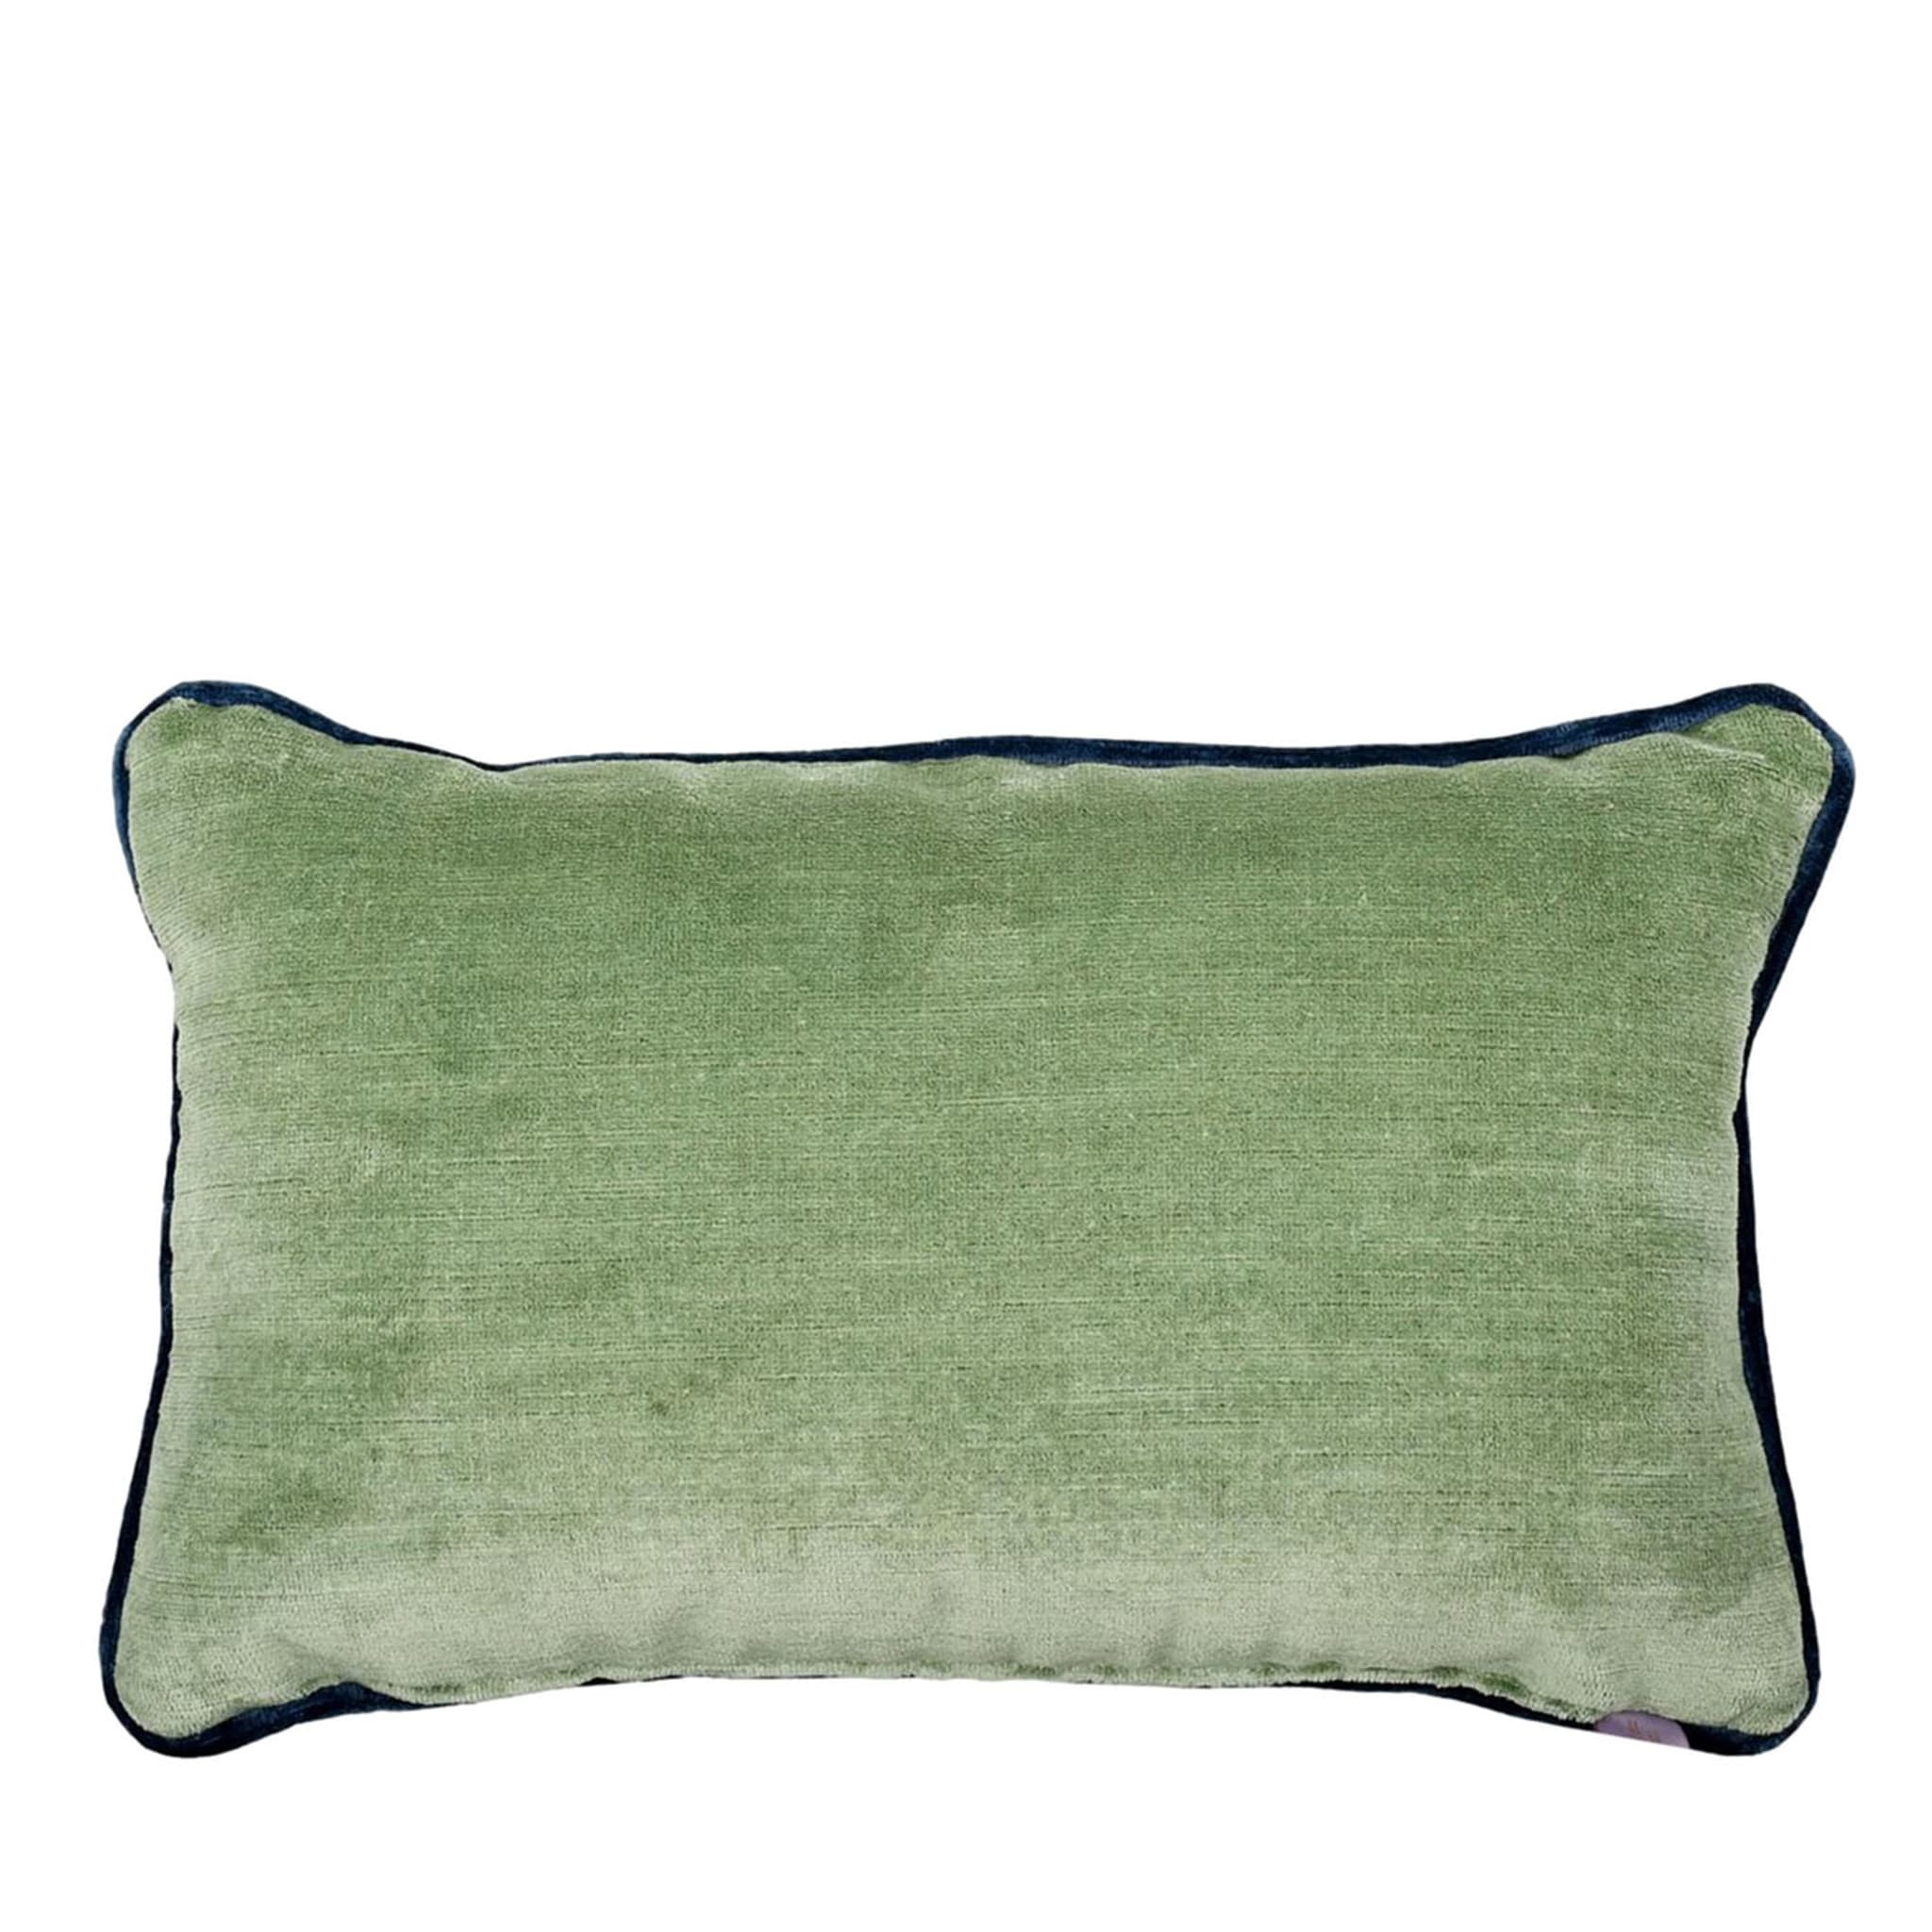 Rectangular Longue Cushion in linen velvet - Main view